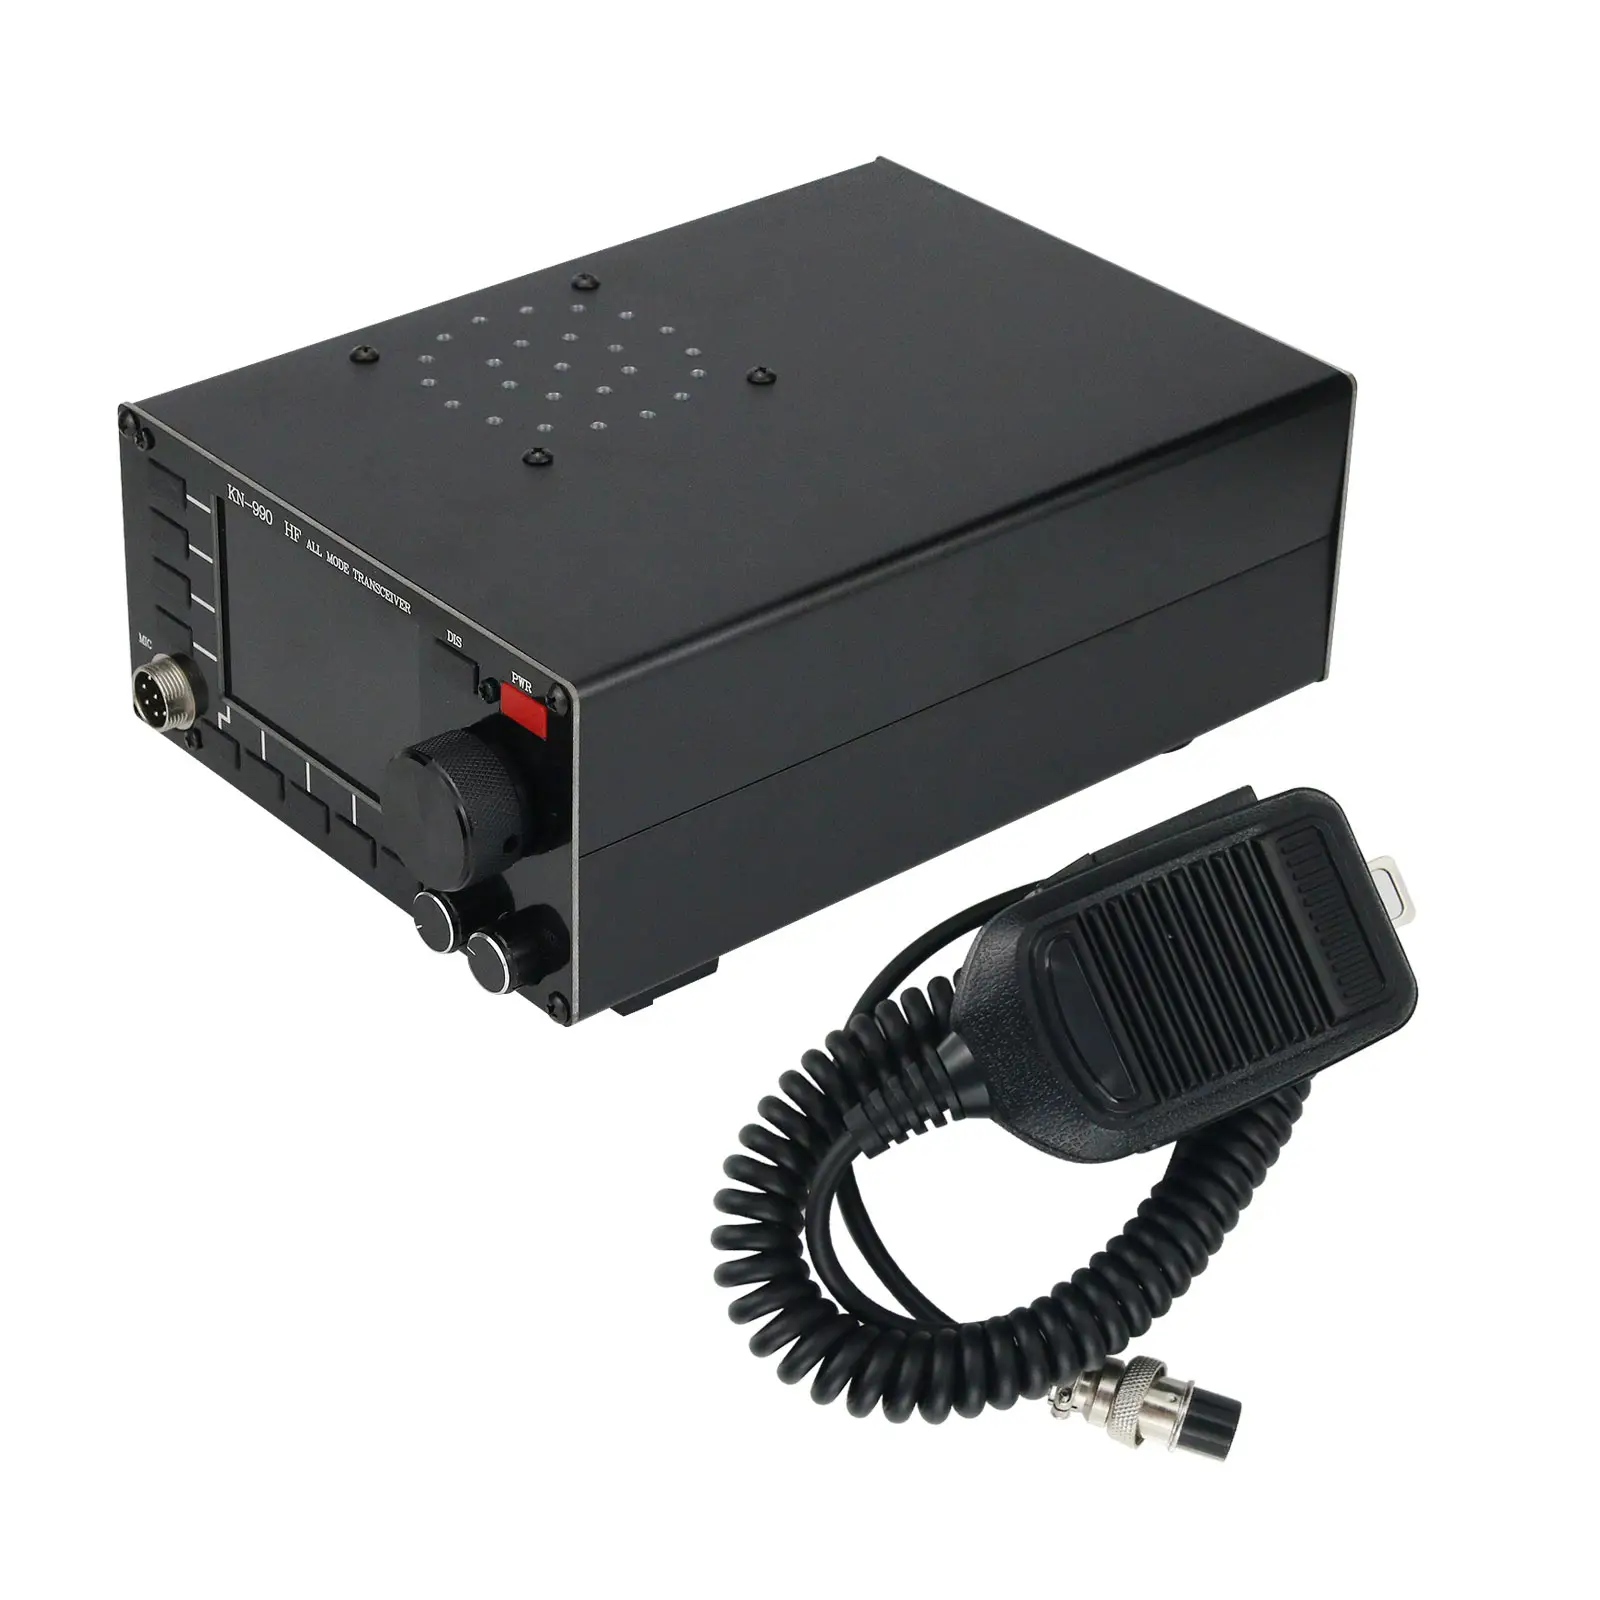 Приемник-передатчик KN990 HF все режимы SSB/CW/AM/FM/цифровой рабочий короткий приемопередатчик